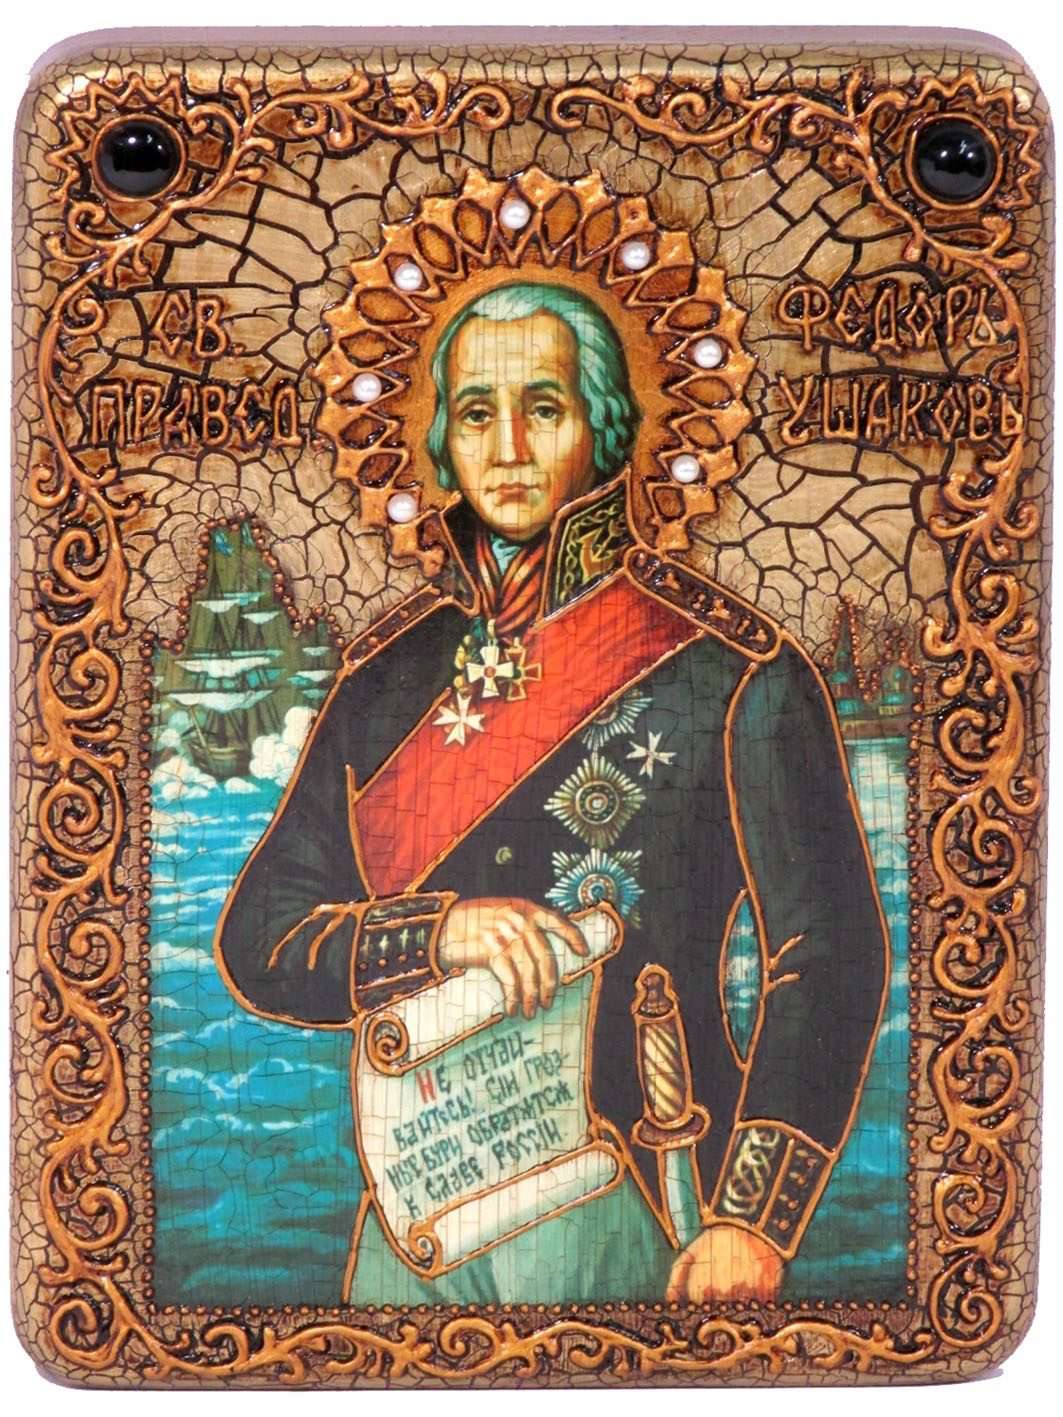 Подарочная икона Святой праведный воин Феодор Адмирал (Ушаков) на мореном дубе 999-RTI-287m - фото